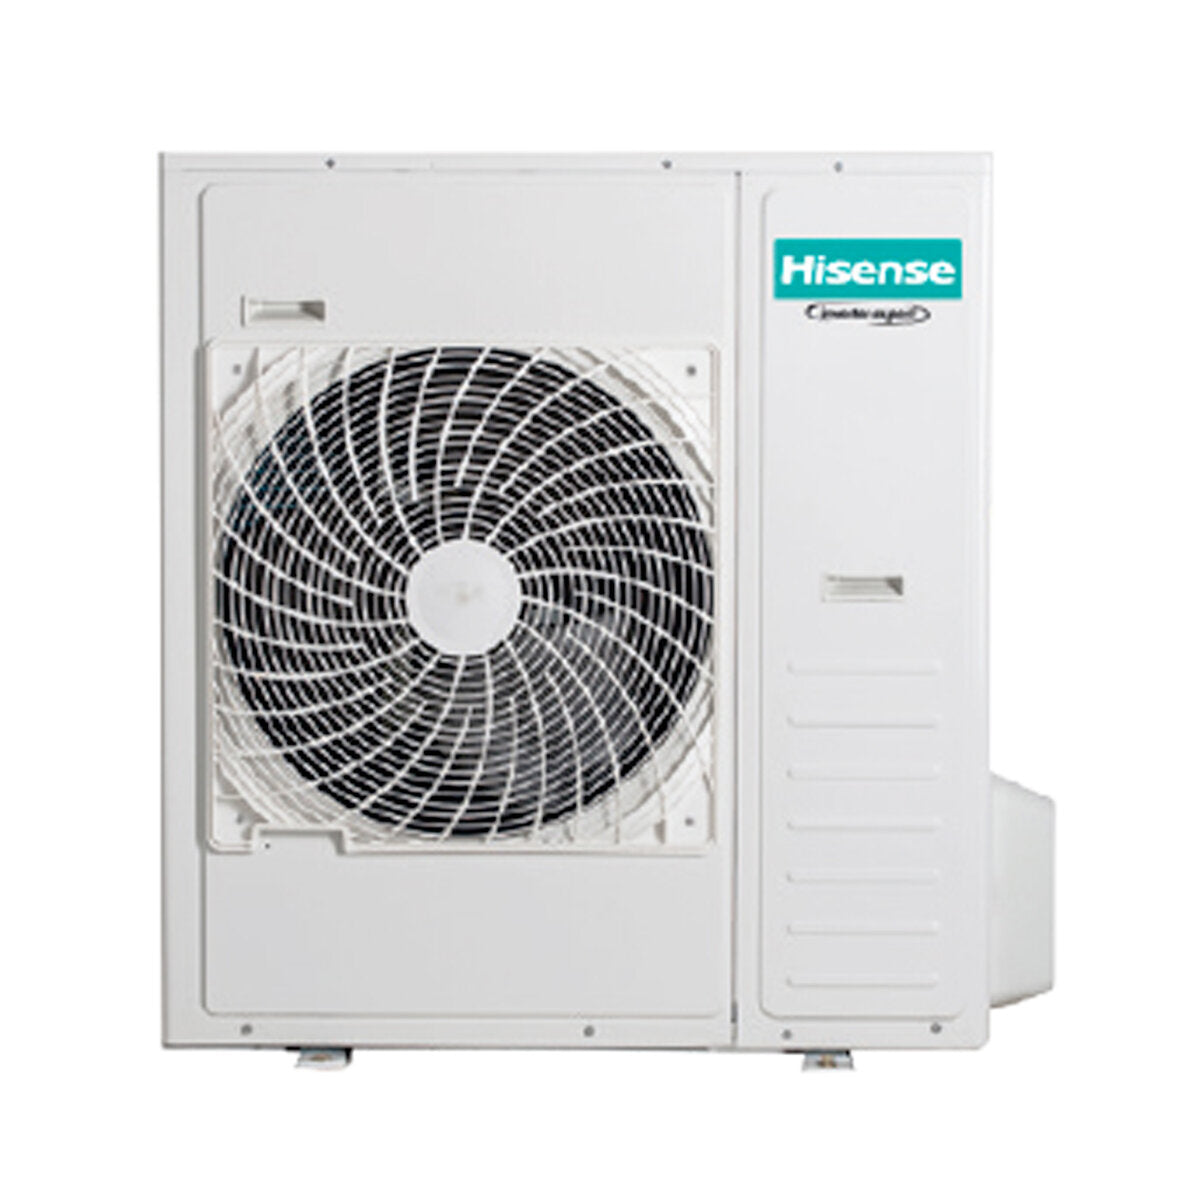 Hisense Hi-Comfort penta climatiseur split 9000+9000+9000+9000+9000 BTU wifi inverter unité extérieure 12,5 kW